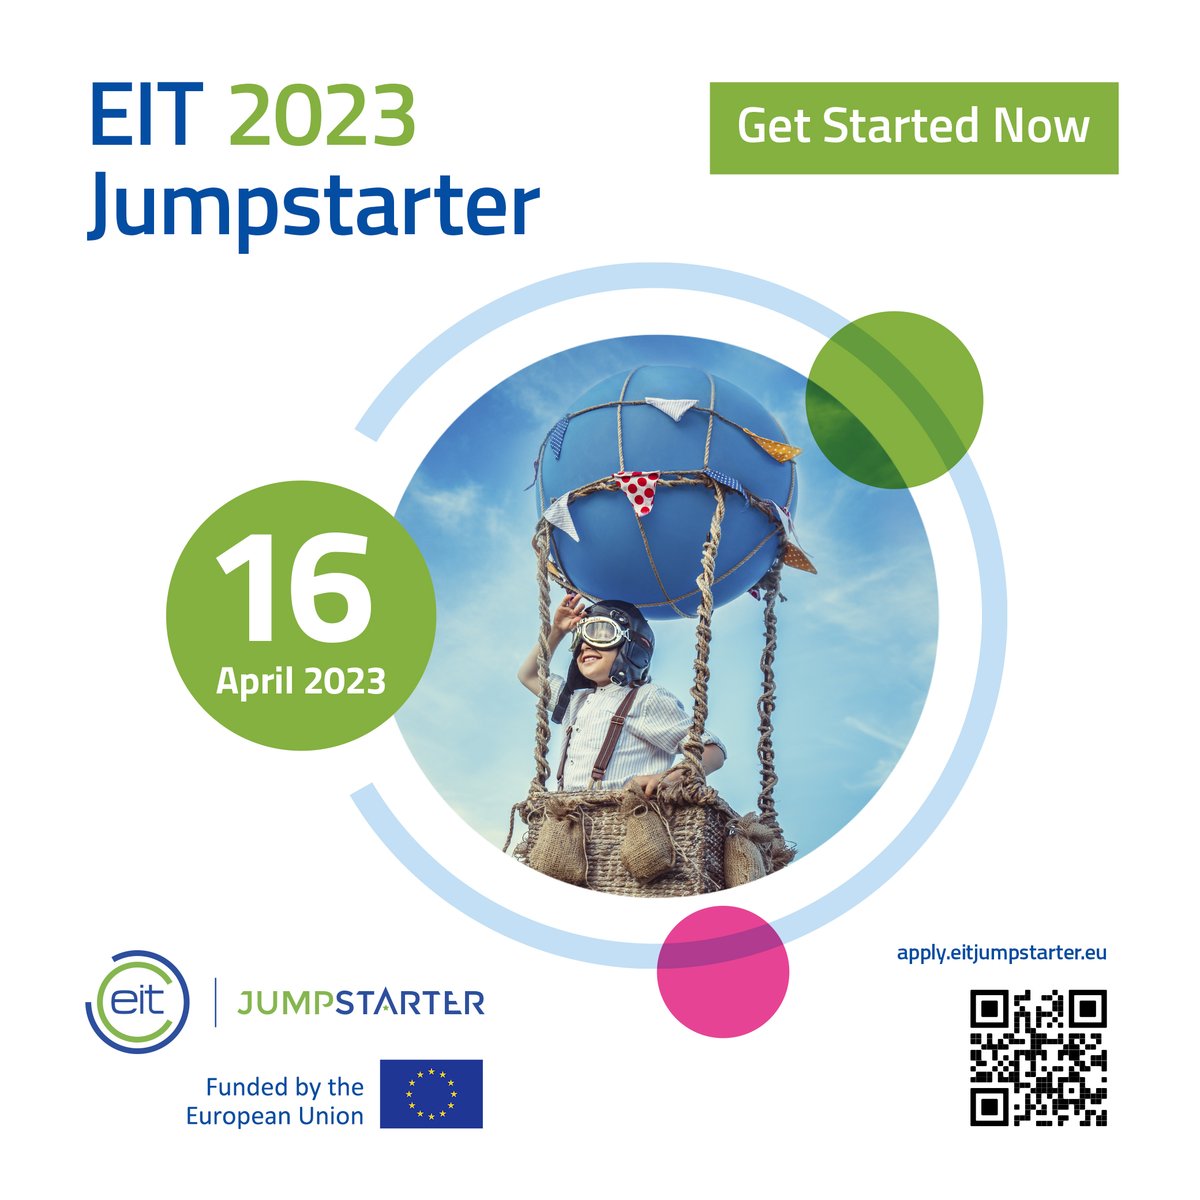 📢Vēl līdz 16. aprīlim iespējams pieteikties dalībai programmā «EIT Jumpstarter», lai inovatīvu biznesa ideju pārvērstu reālā uzņēmējdarbībā un, iespējams, rudenī sacenstos par balvu 10 000 EUR apmērā. Uzzini vairāk un piesakies 👉 eitjumpstarter.eu

#EITJumpstarter